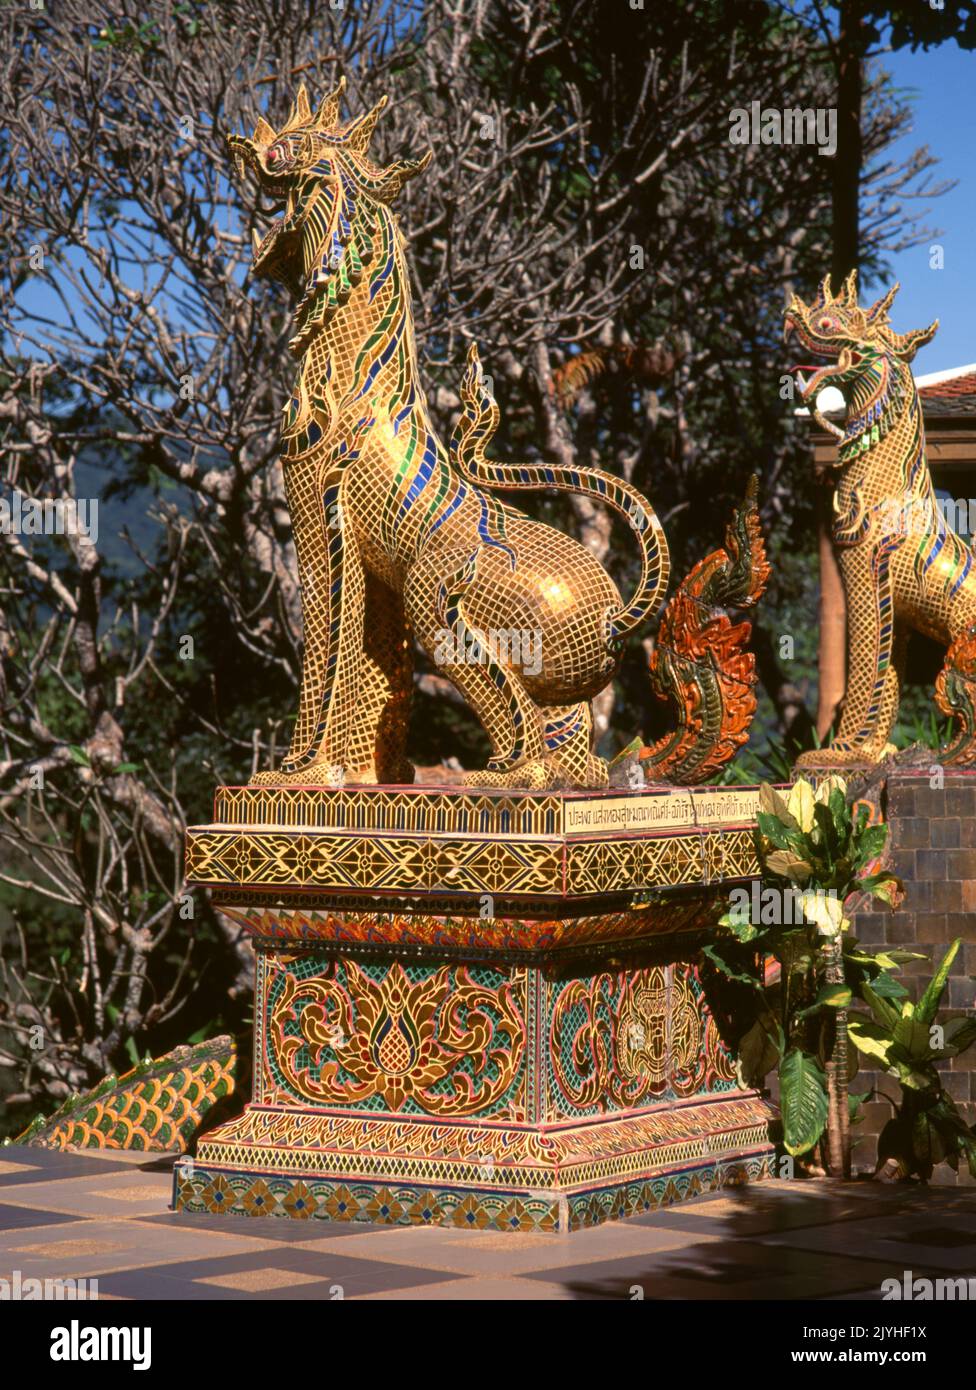 Thailandia: singha decorativo (leone mitico), Wat Phrathat Doi Suthep, un tempio buddista Theravada situato sul Doi Suthep (montagna Suthep), che domina la città di Chiang mai. Il magnifico Chedi dorato, che risale al 16th ° secolo, offre superbe vedute attraverso la Valle di Chiang mai fino al fiume Ping. Re Mengrai fondò la città di Chiang mai (che significa 'nuova città') nel 1296, e successe a Chiang Rai come capitale del regno Lanna. Foto Stock